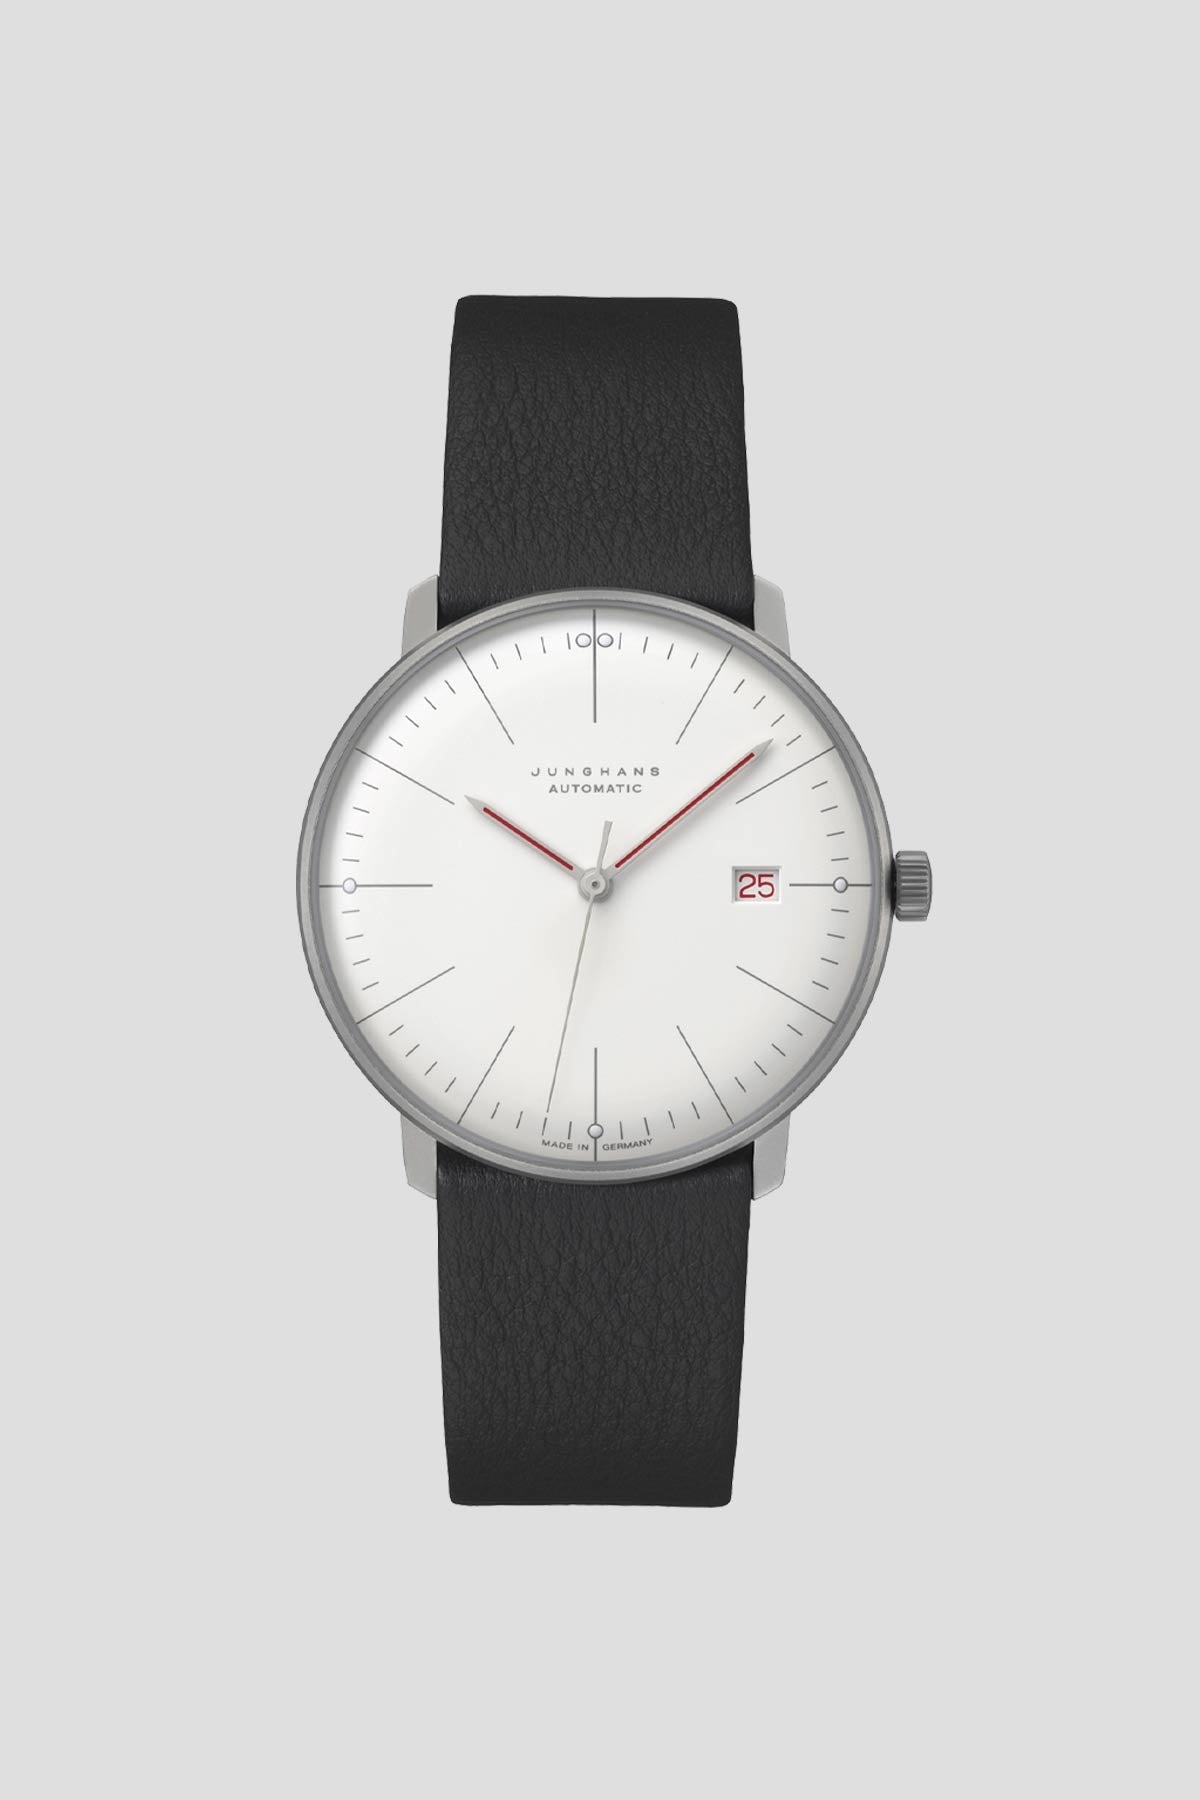 Max Bill Bauhaus Automatic Watch